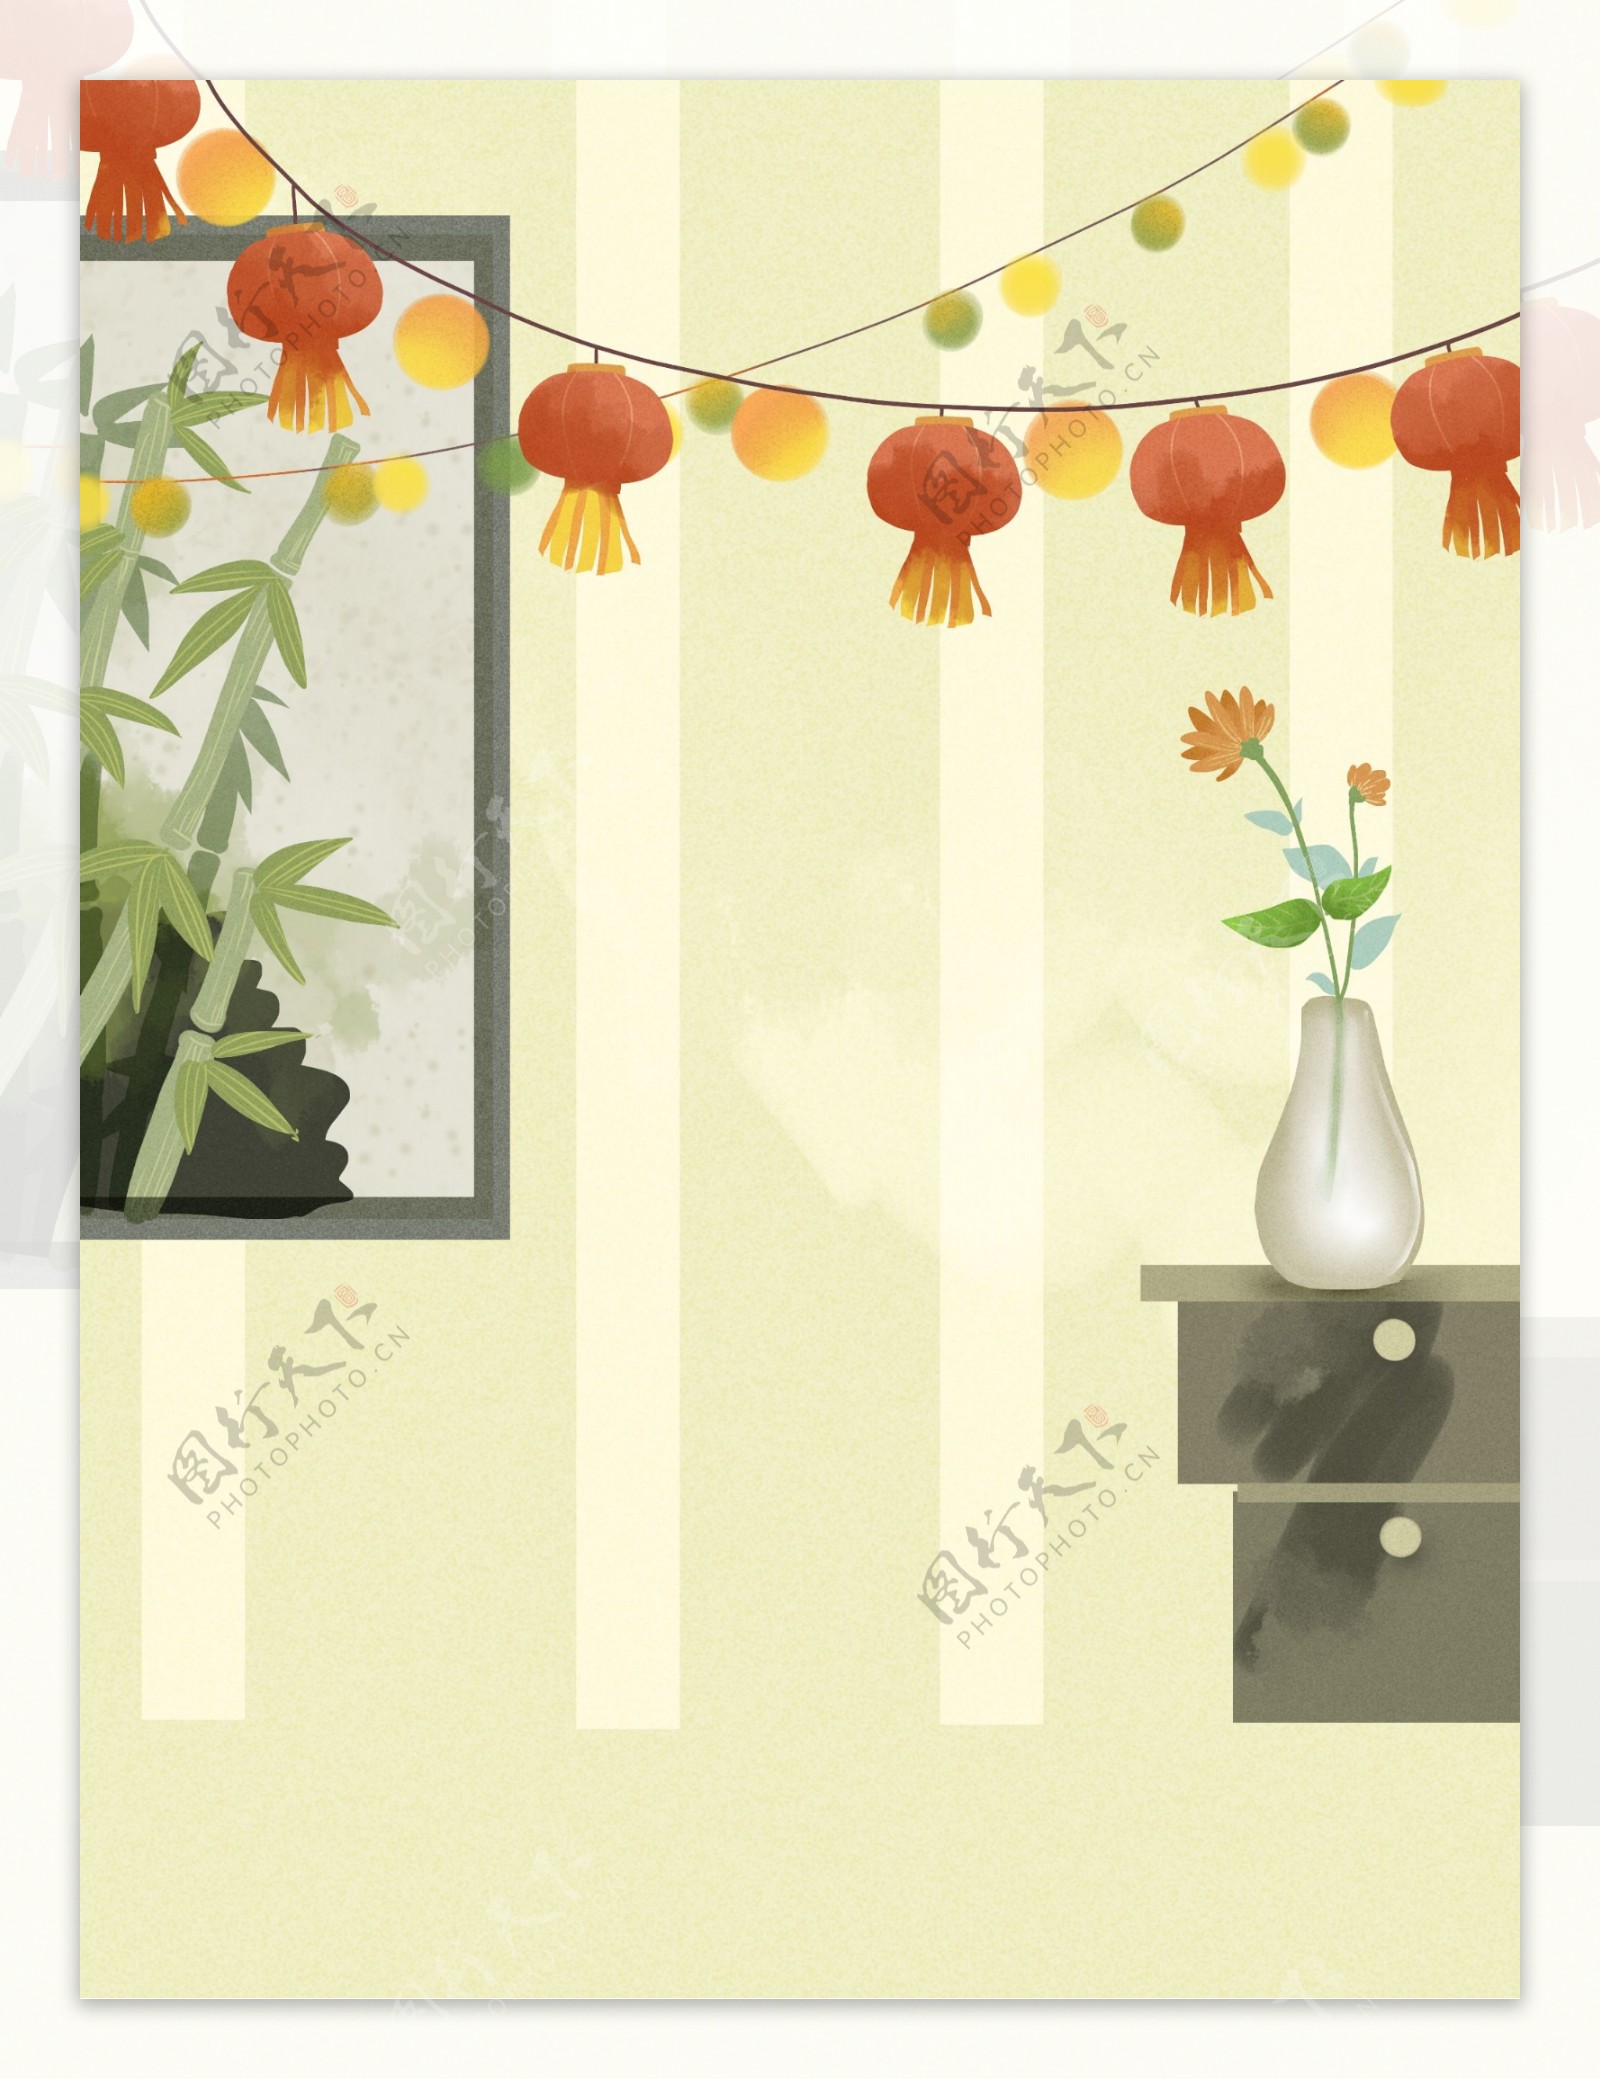 手绘端午节主题灯笼竹子背景设计